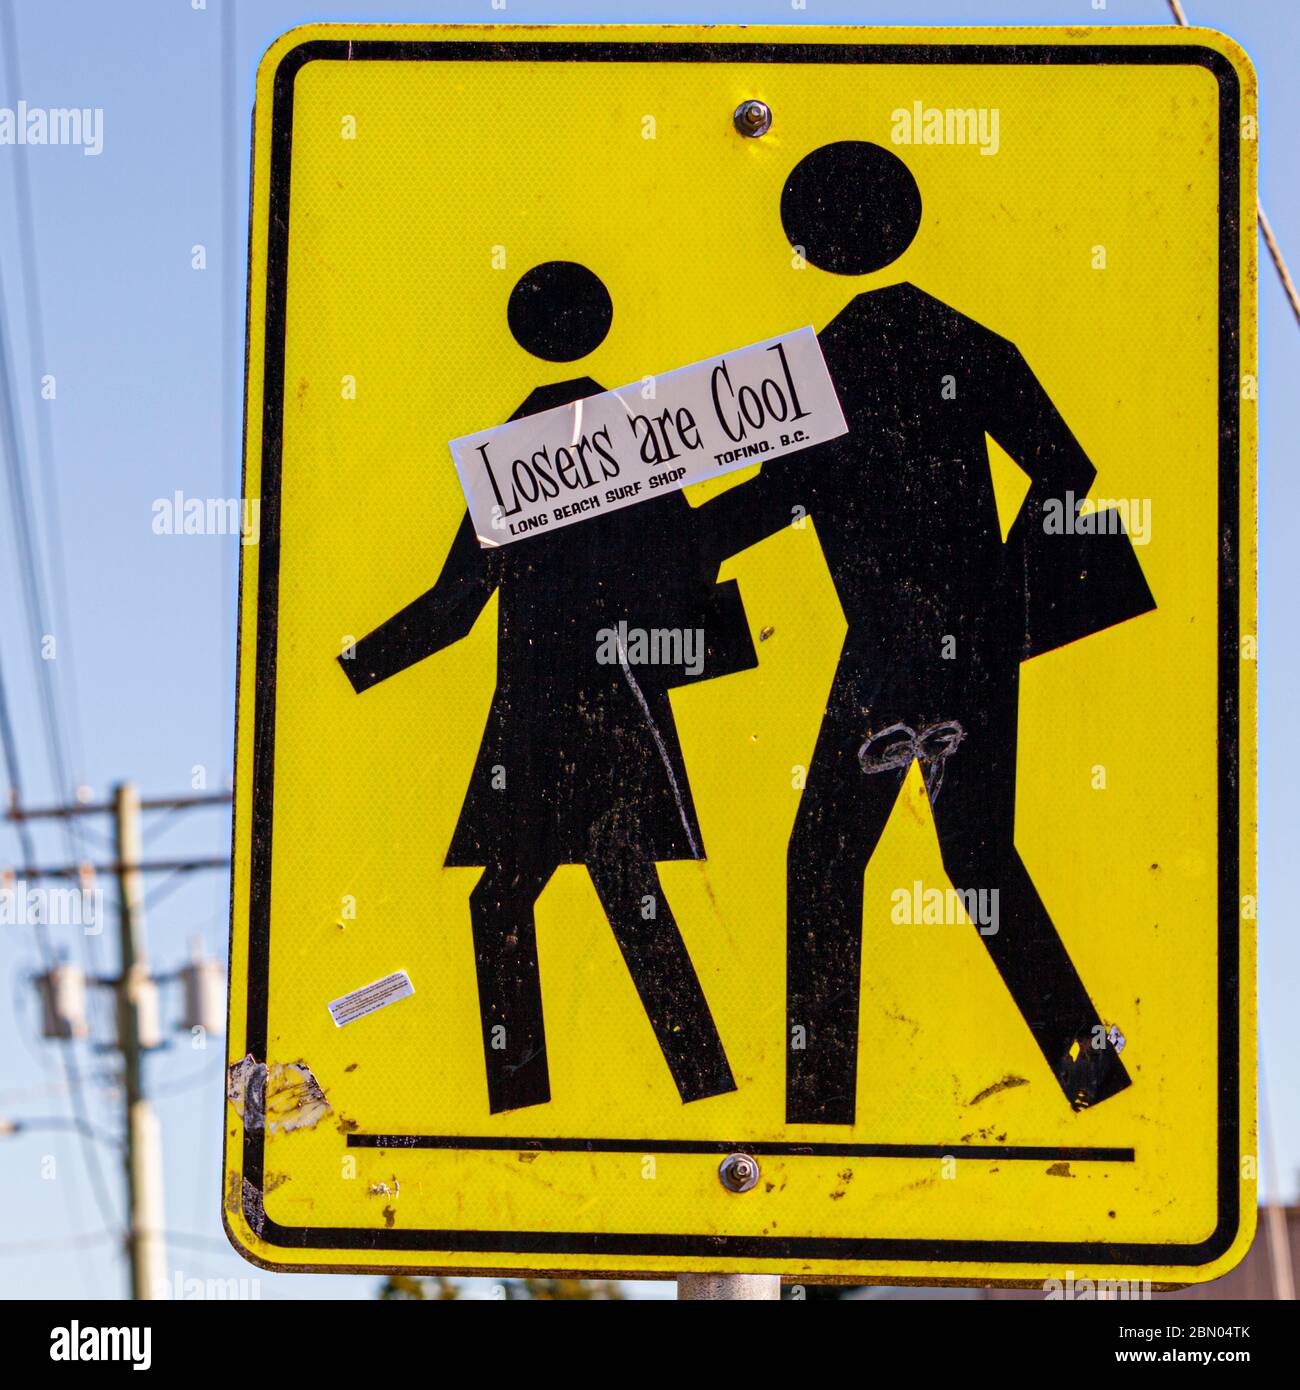 Verlierer sind cool. Verkehrszeichen der Studenten auf der Straße in Ucluelet, Kanada Stockfoto